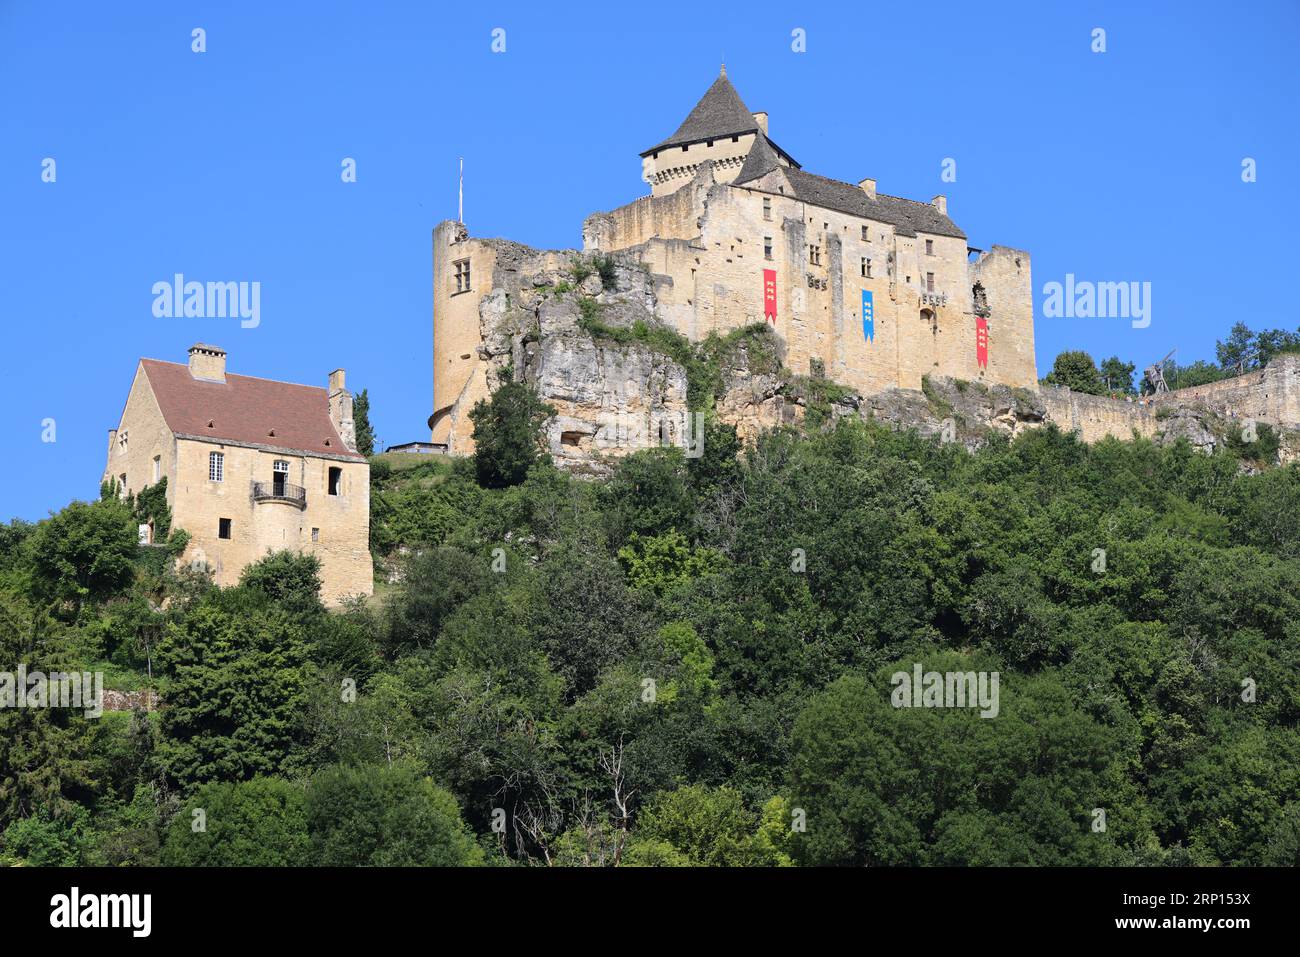 Le Château fort de Castelnaud abrite le musée de la guerre au Moyen Âge et domine la Dordogne. Arquitectura, Historia, Moyen âge, rivière, naturaleza, leva Foto de stock